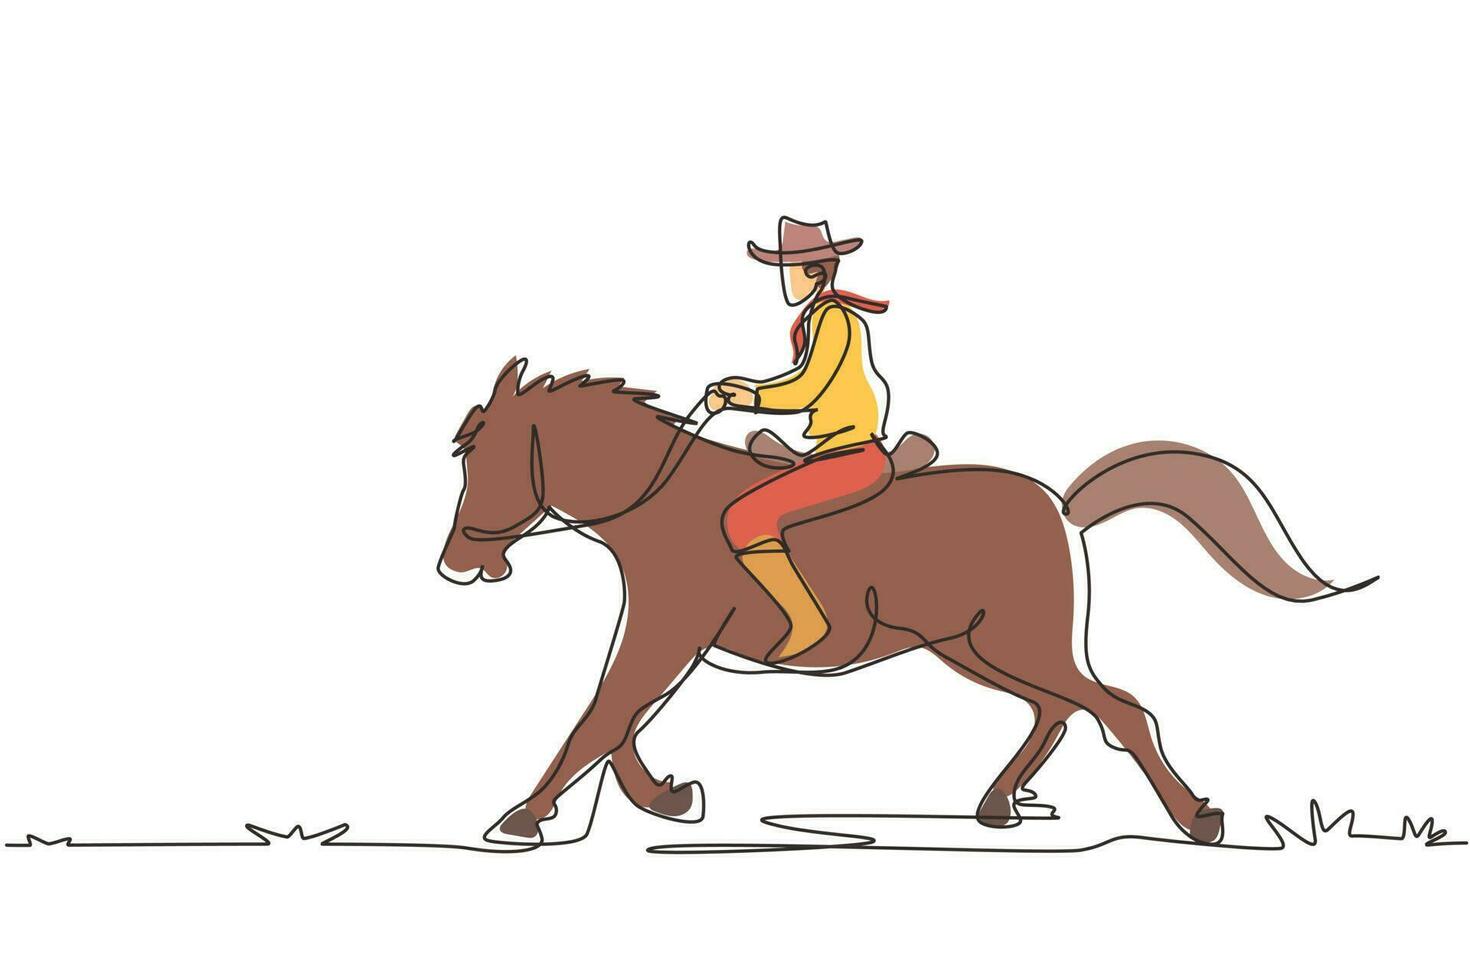 kontinuerlig en rad som ritar vilda västern och öken med cowboy ridhäst. mustang och person utomhus vid solnedgången. cowboy och häst ikon eller logotyp. enda rad rita design vektorgrafisk illustration vektor